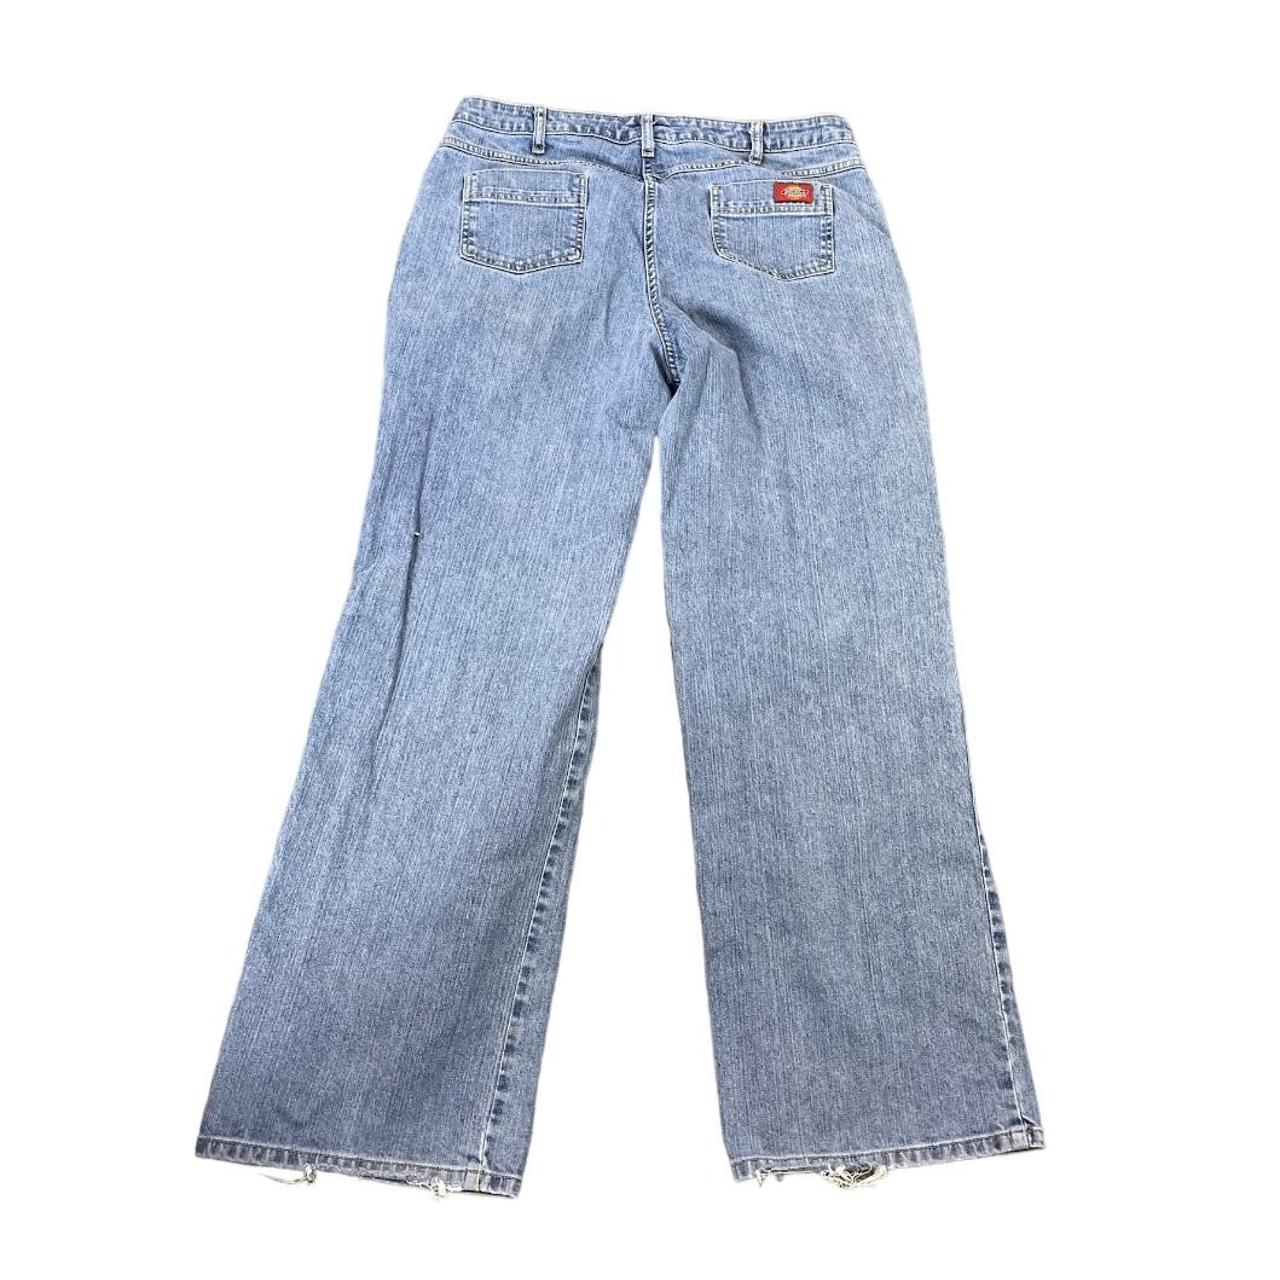 2000s Women’s Dickies Jeans Size 34X31 12... - Depop